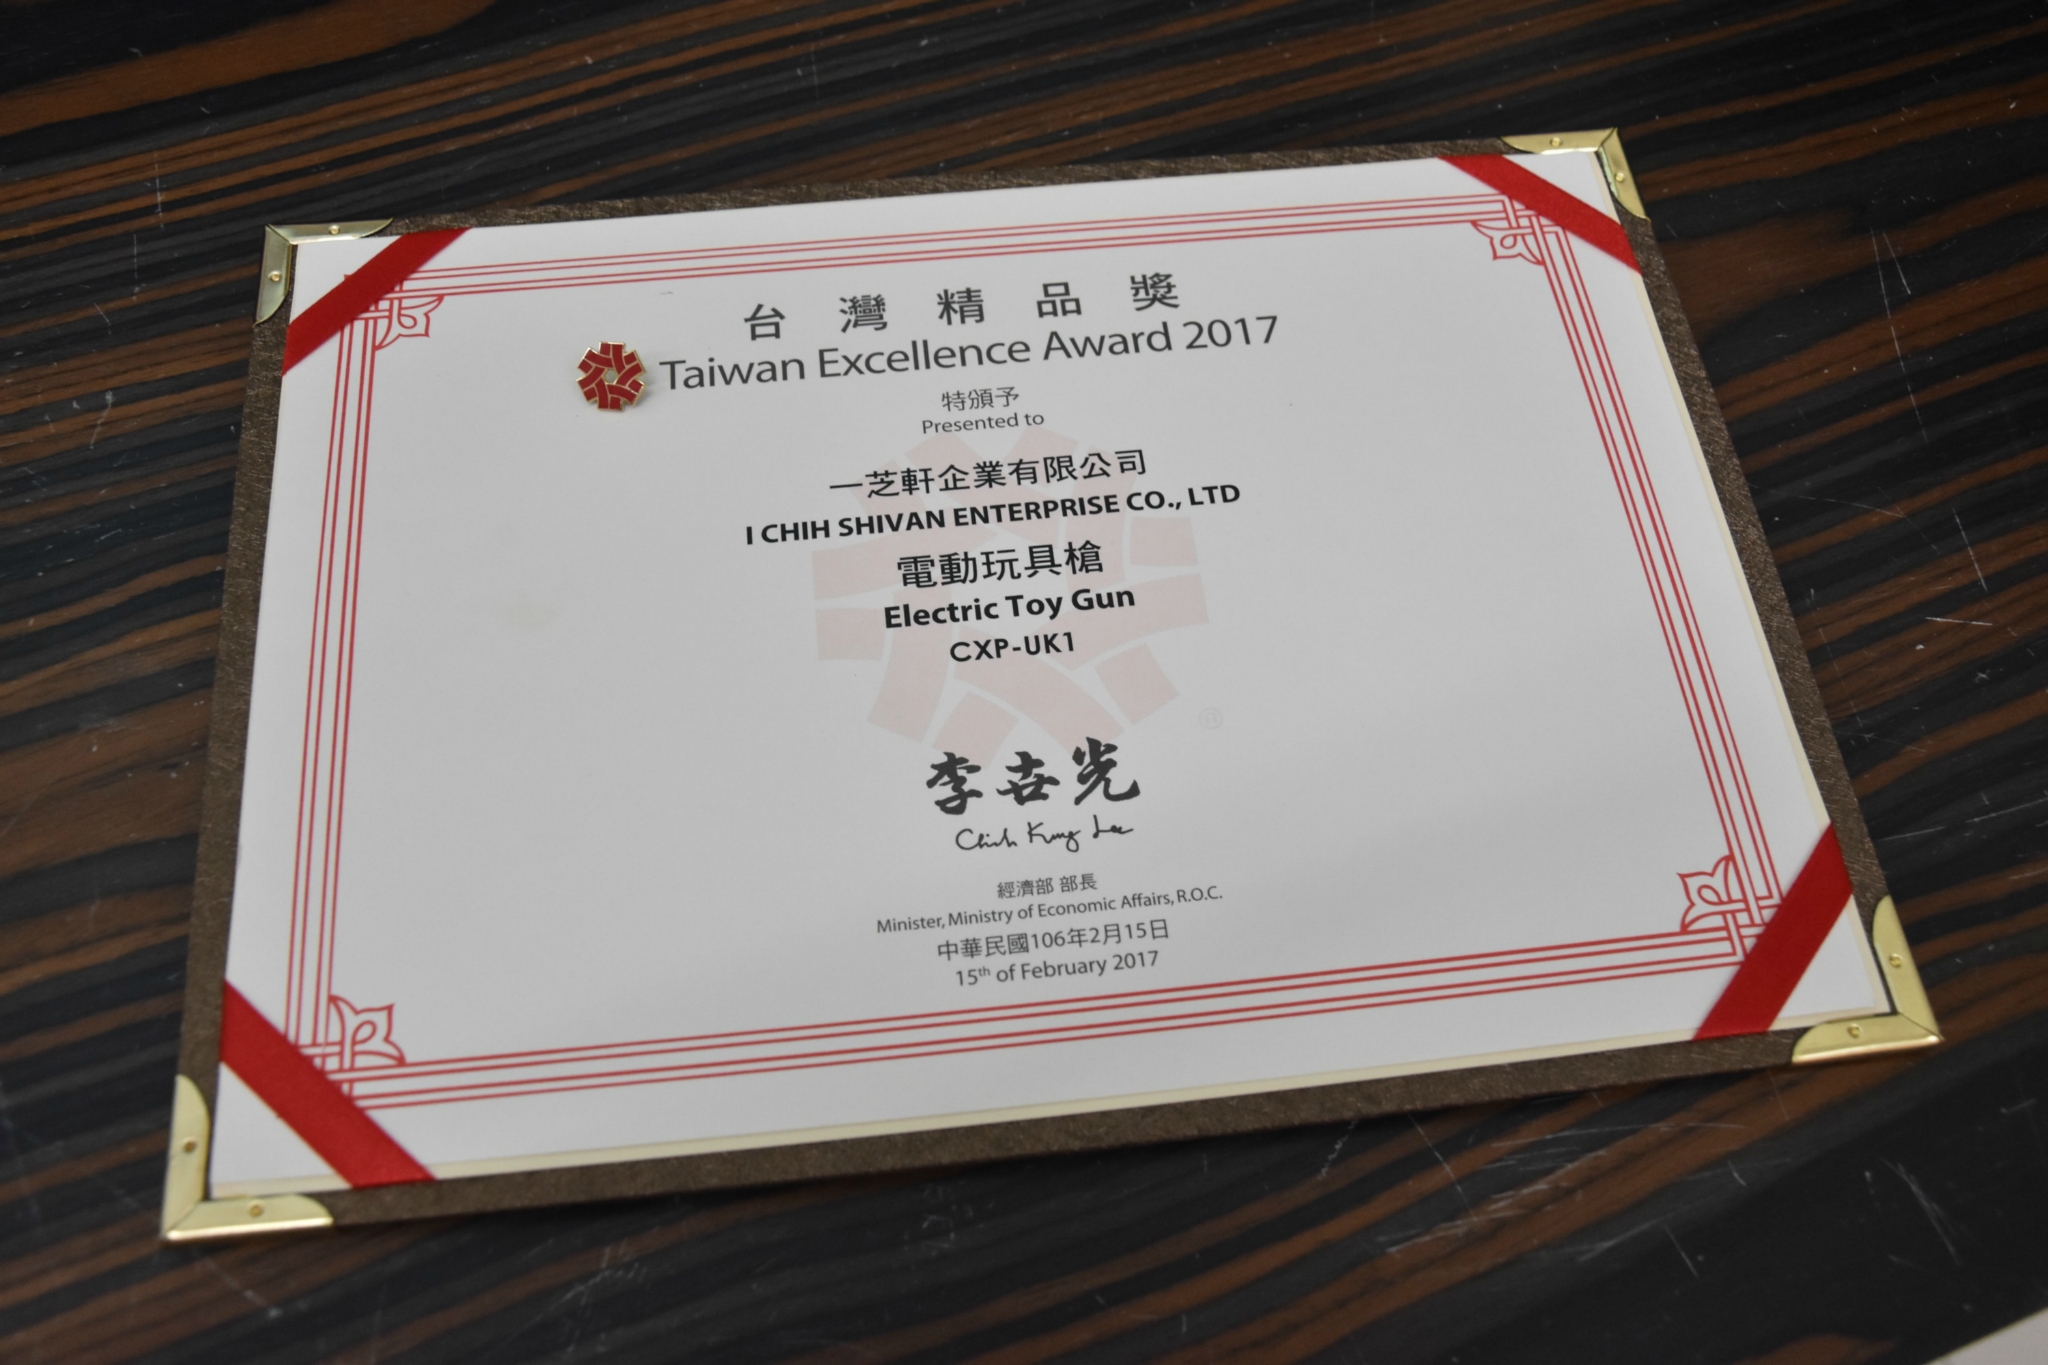 【朗報】ICSが2017年台湾エクセレンス賞を受賞致しました